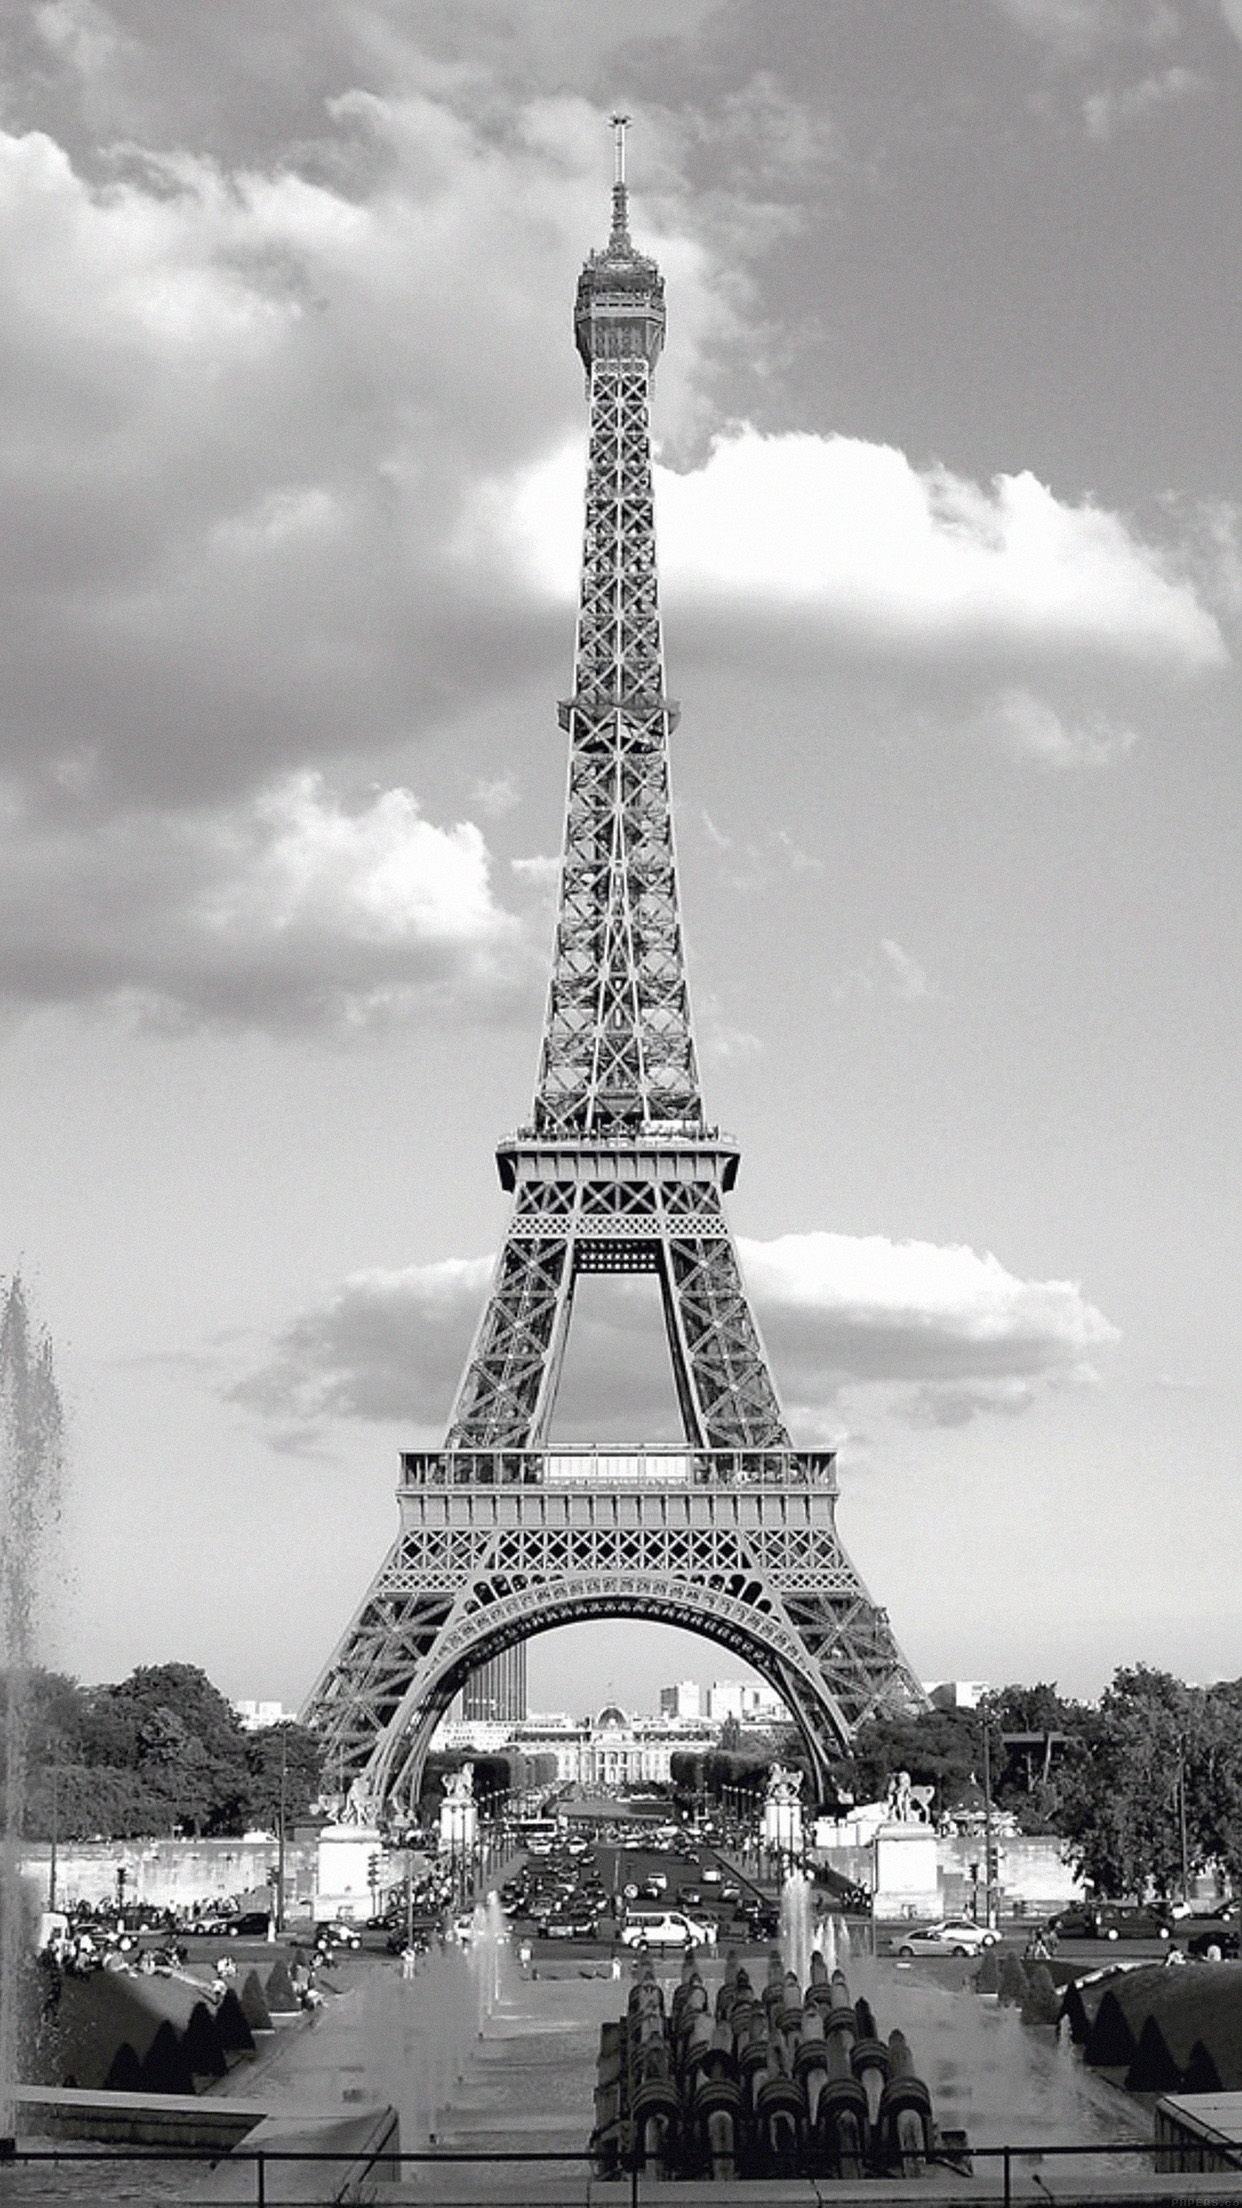 에펠 탑 바탕 화면,탑,하얀,검정색과 흰색,흑백 사진,건축물